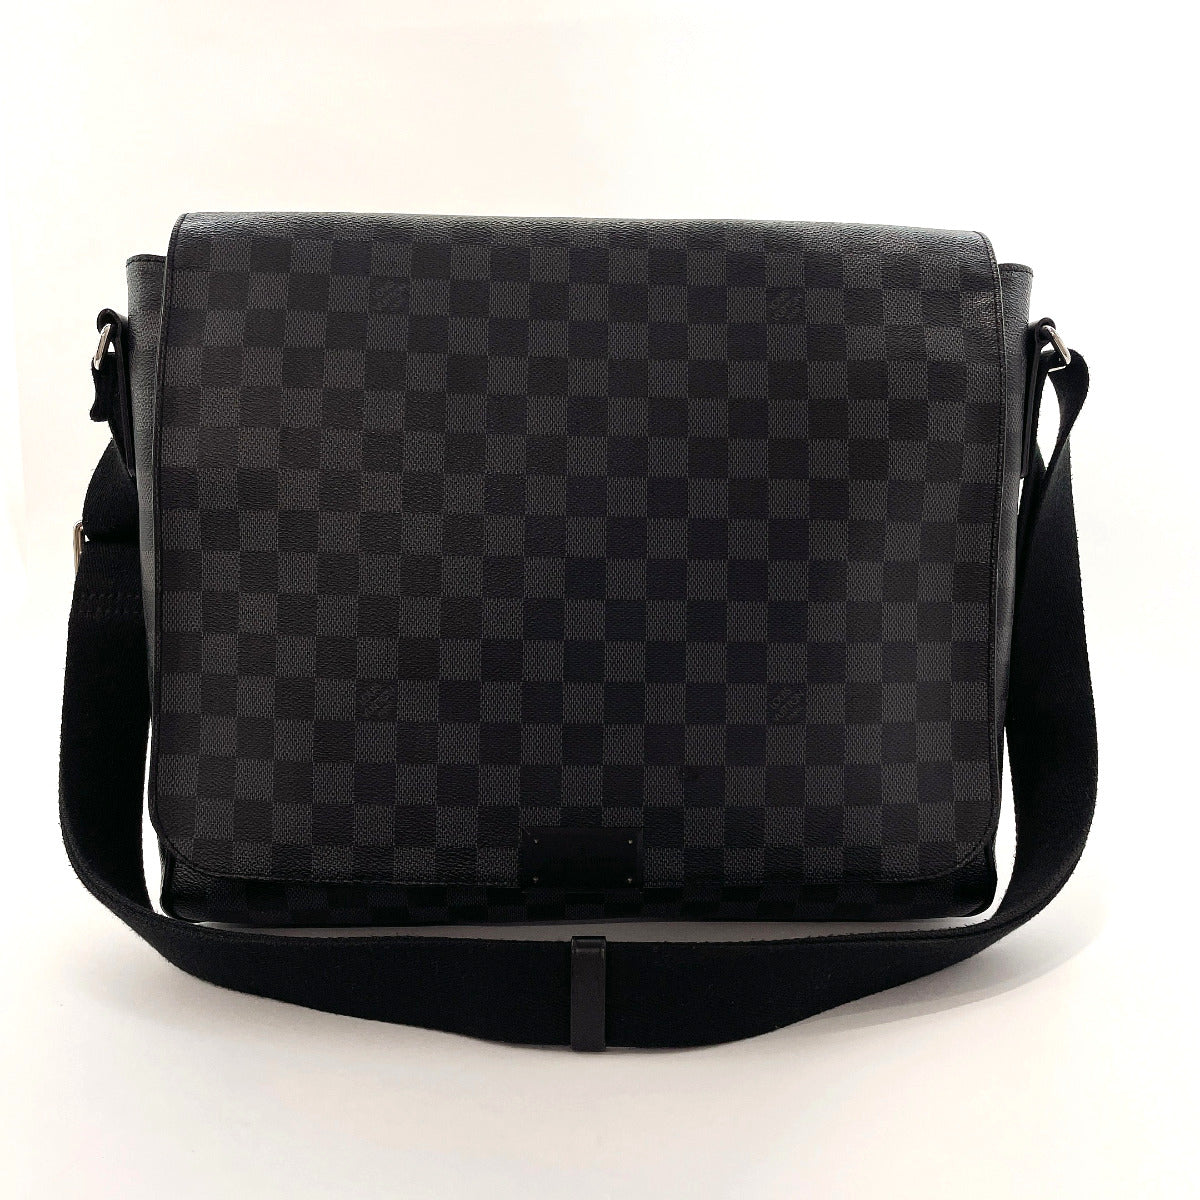 Louis Vuitton Damier Graphite District MM - Grey Messenger Bags